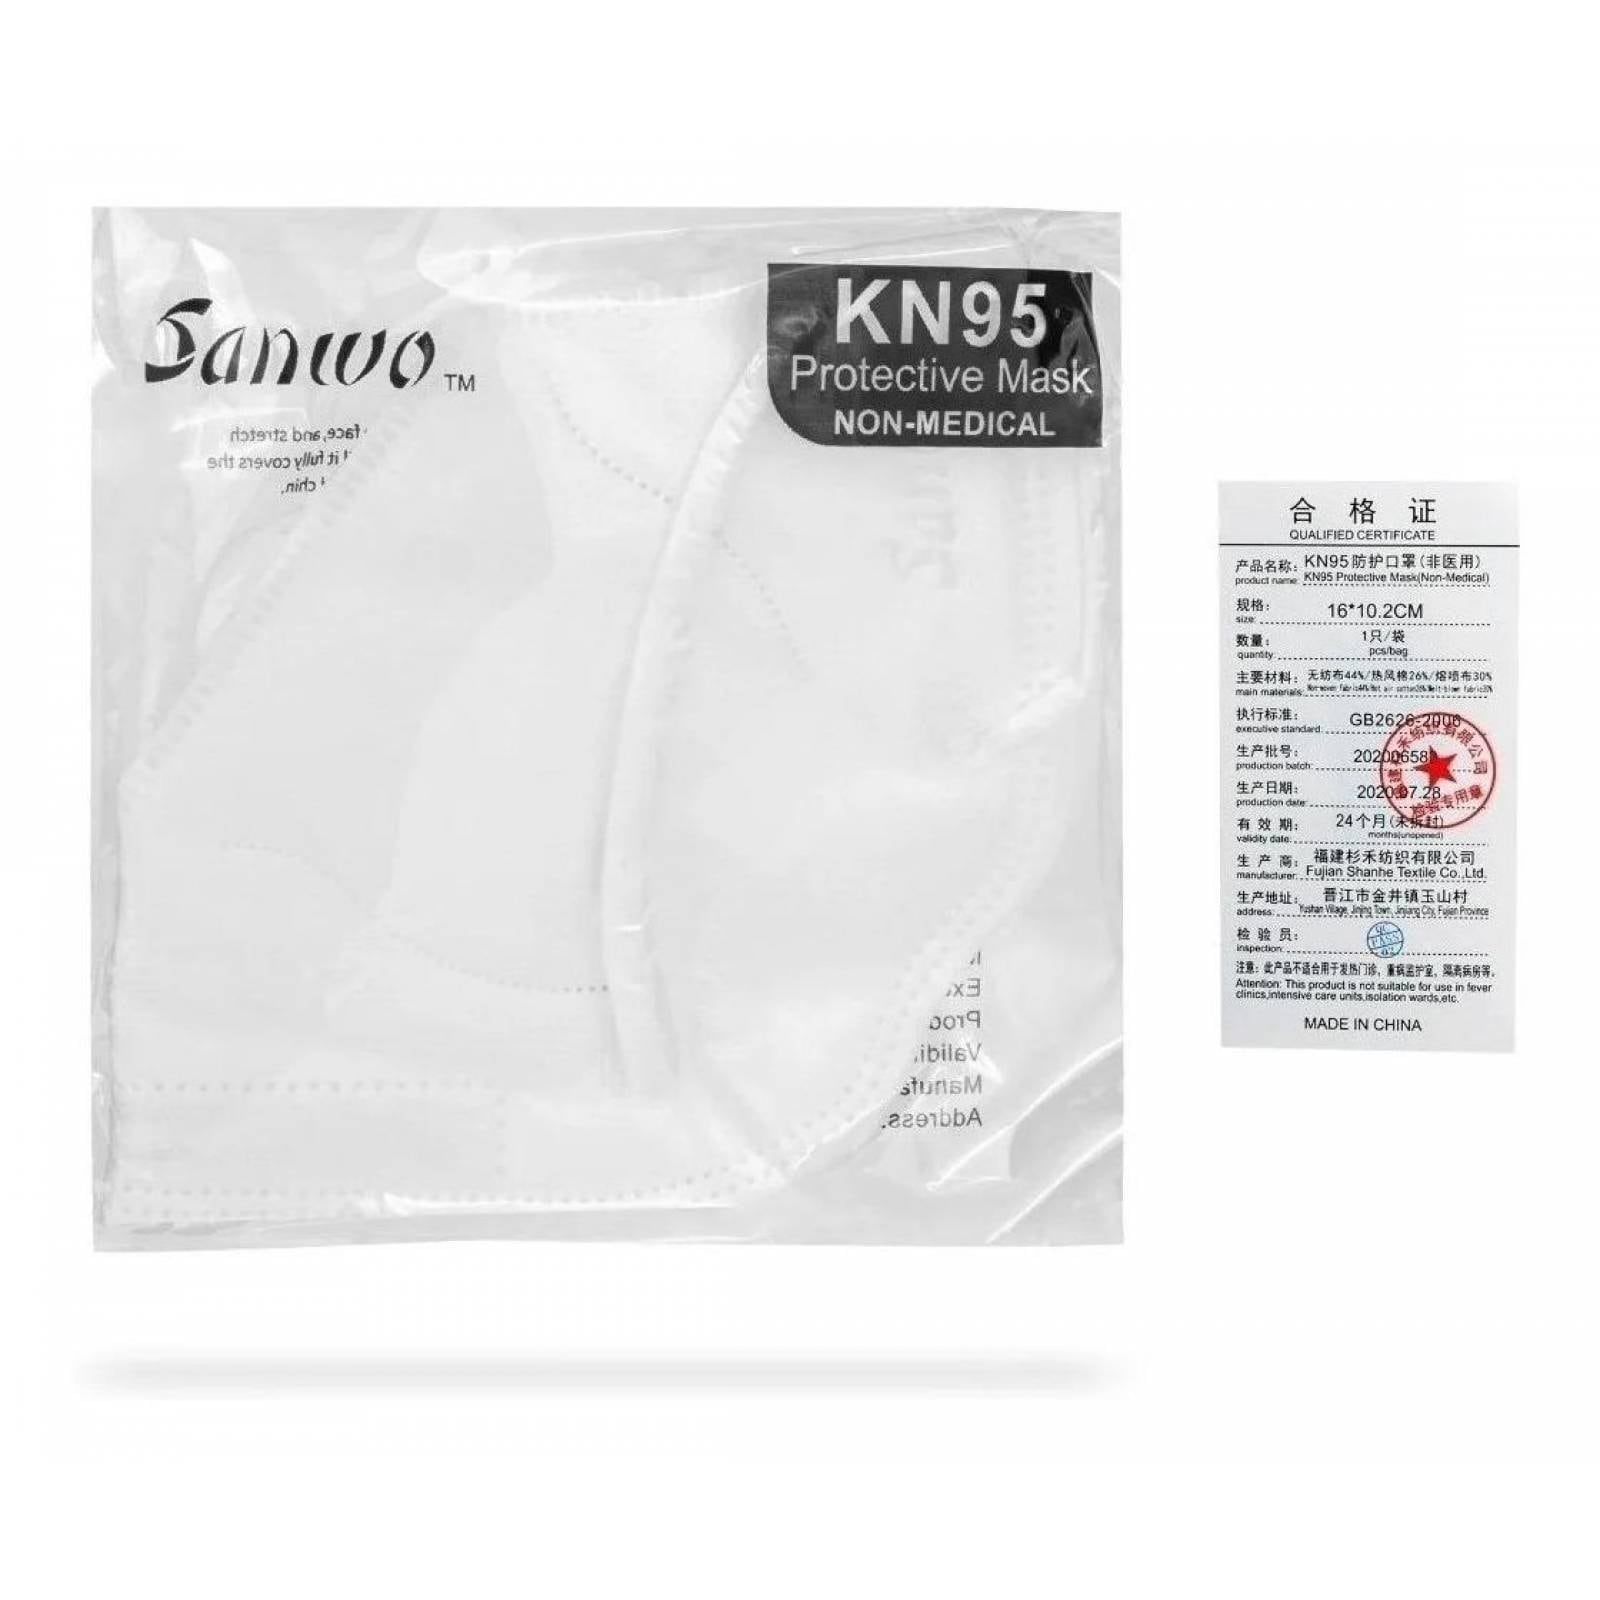 Cubrebocas KN95 Sanwo Blanco certificado ajuste nasal 100 piezas desechables COFEPRIS